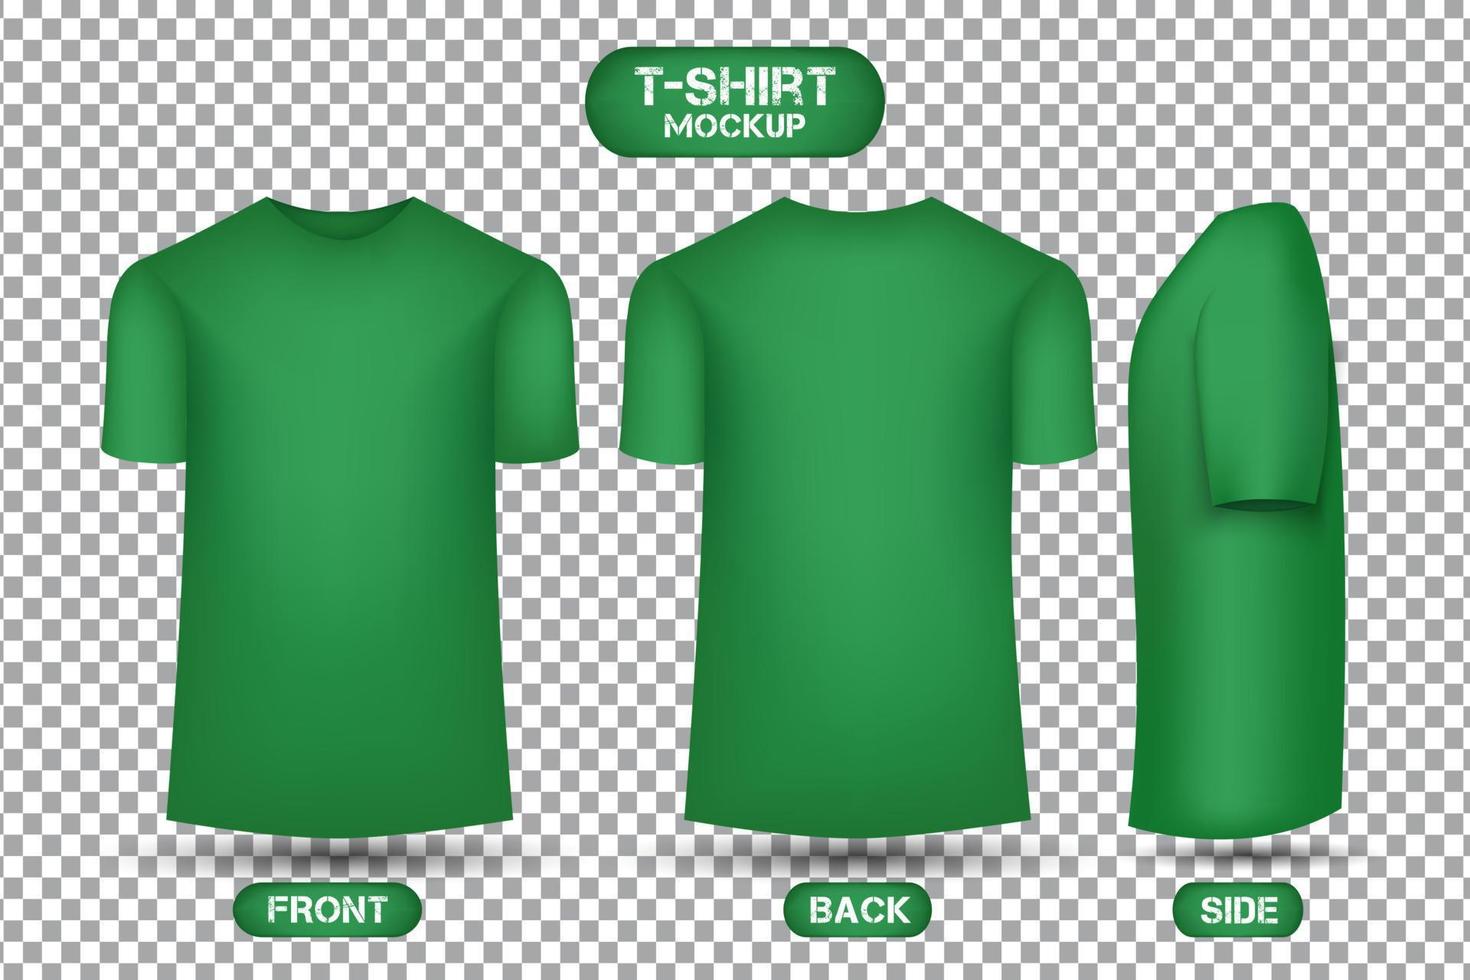 conception de t-shirt vert uni, avec vues avant, arrière et latérales, vecteur de maquette de t-shirt de style 3d